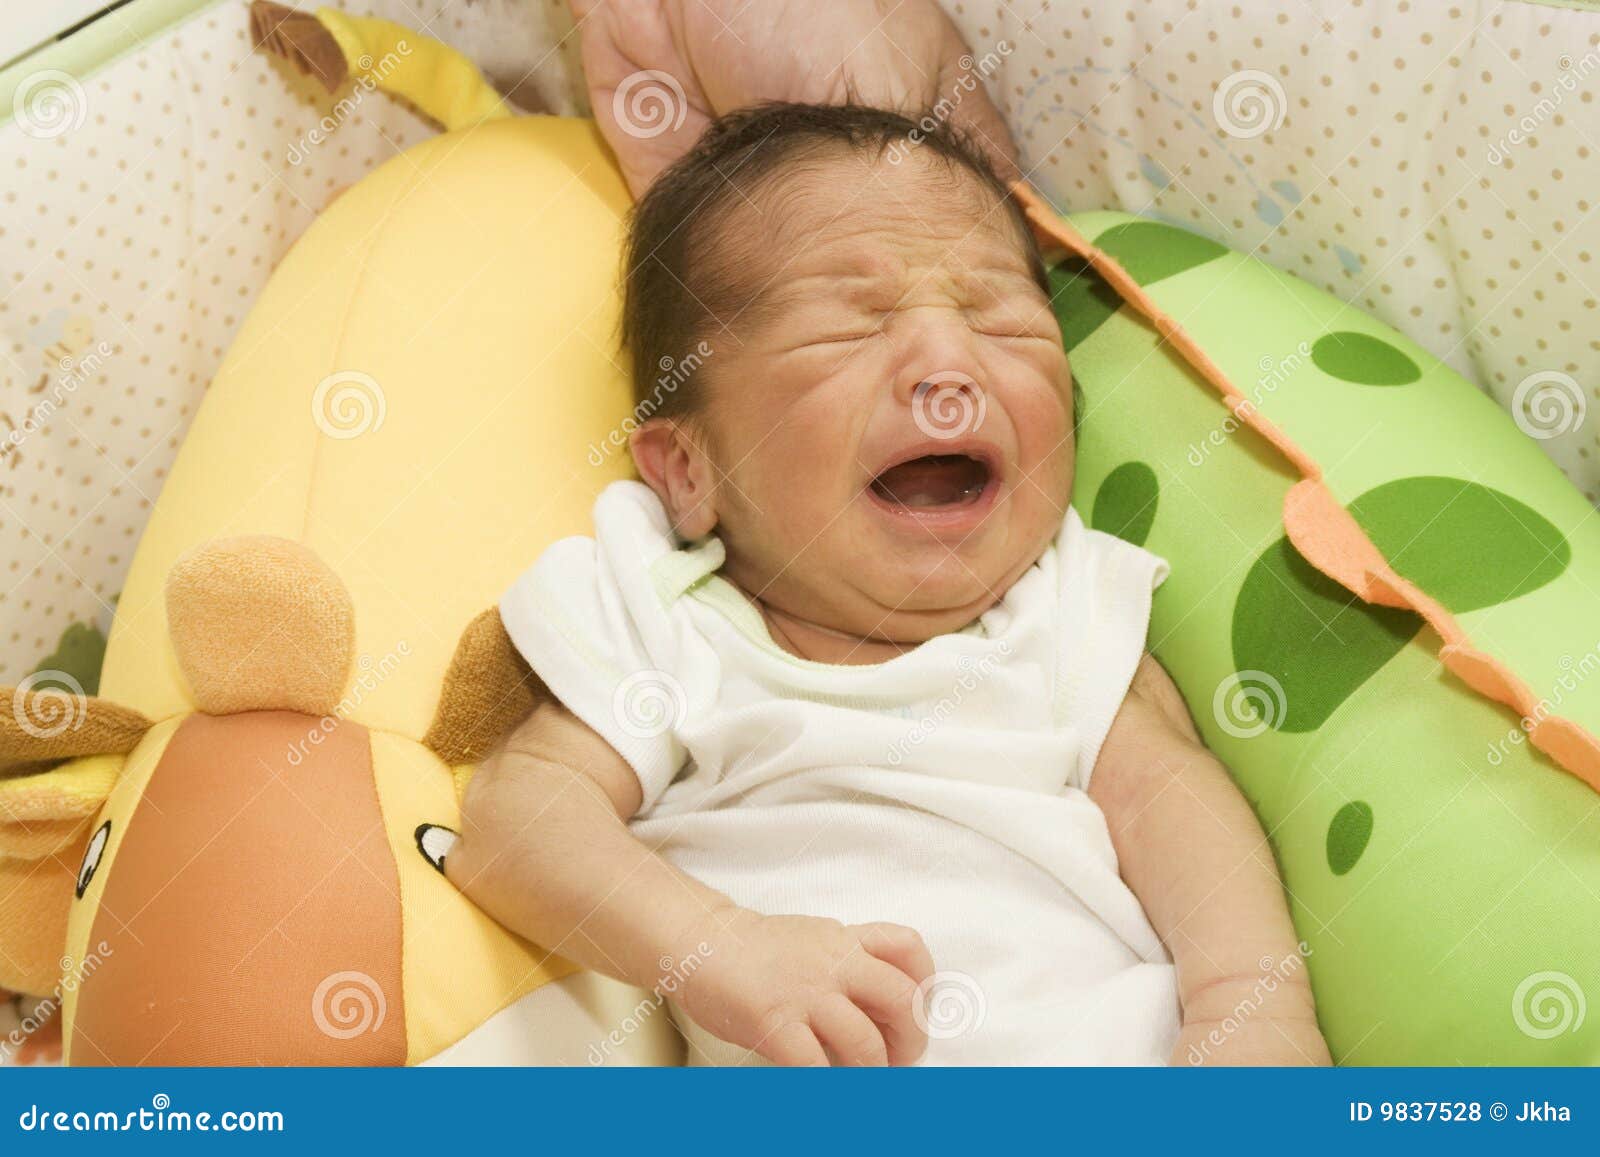 Сон плач младенца. Младенец плачет. Младенец плачет во сне. Грудничок просыпается и плачет. Грудничок часто плачет во сне.